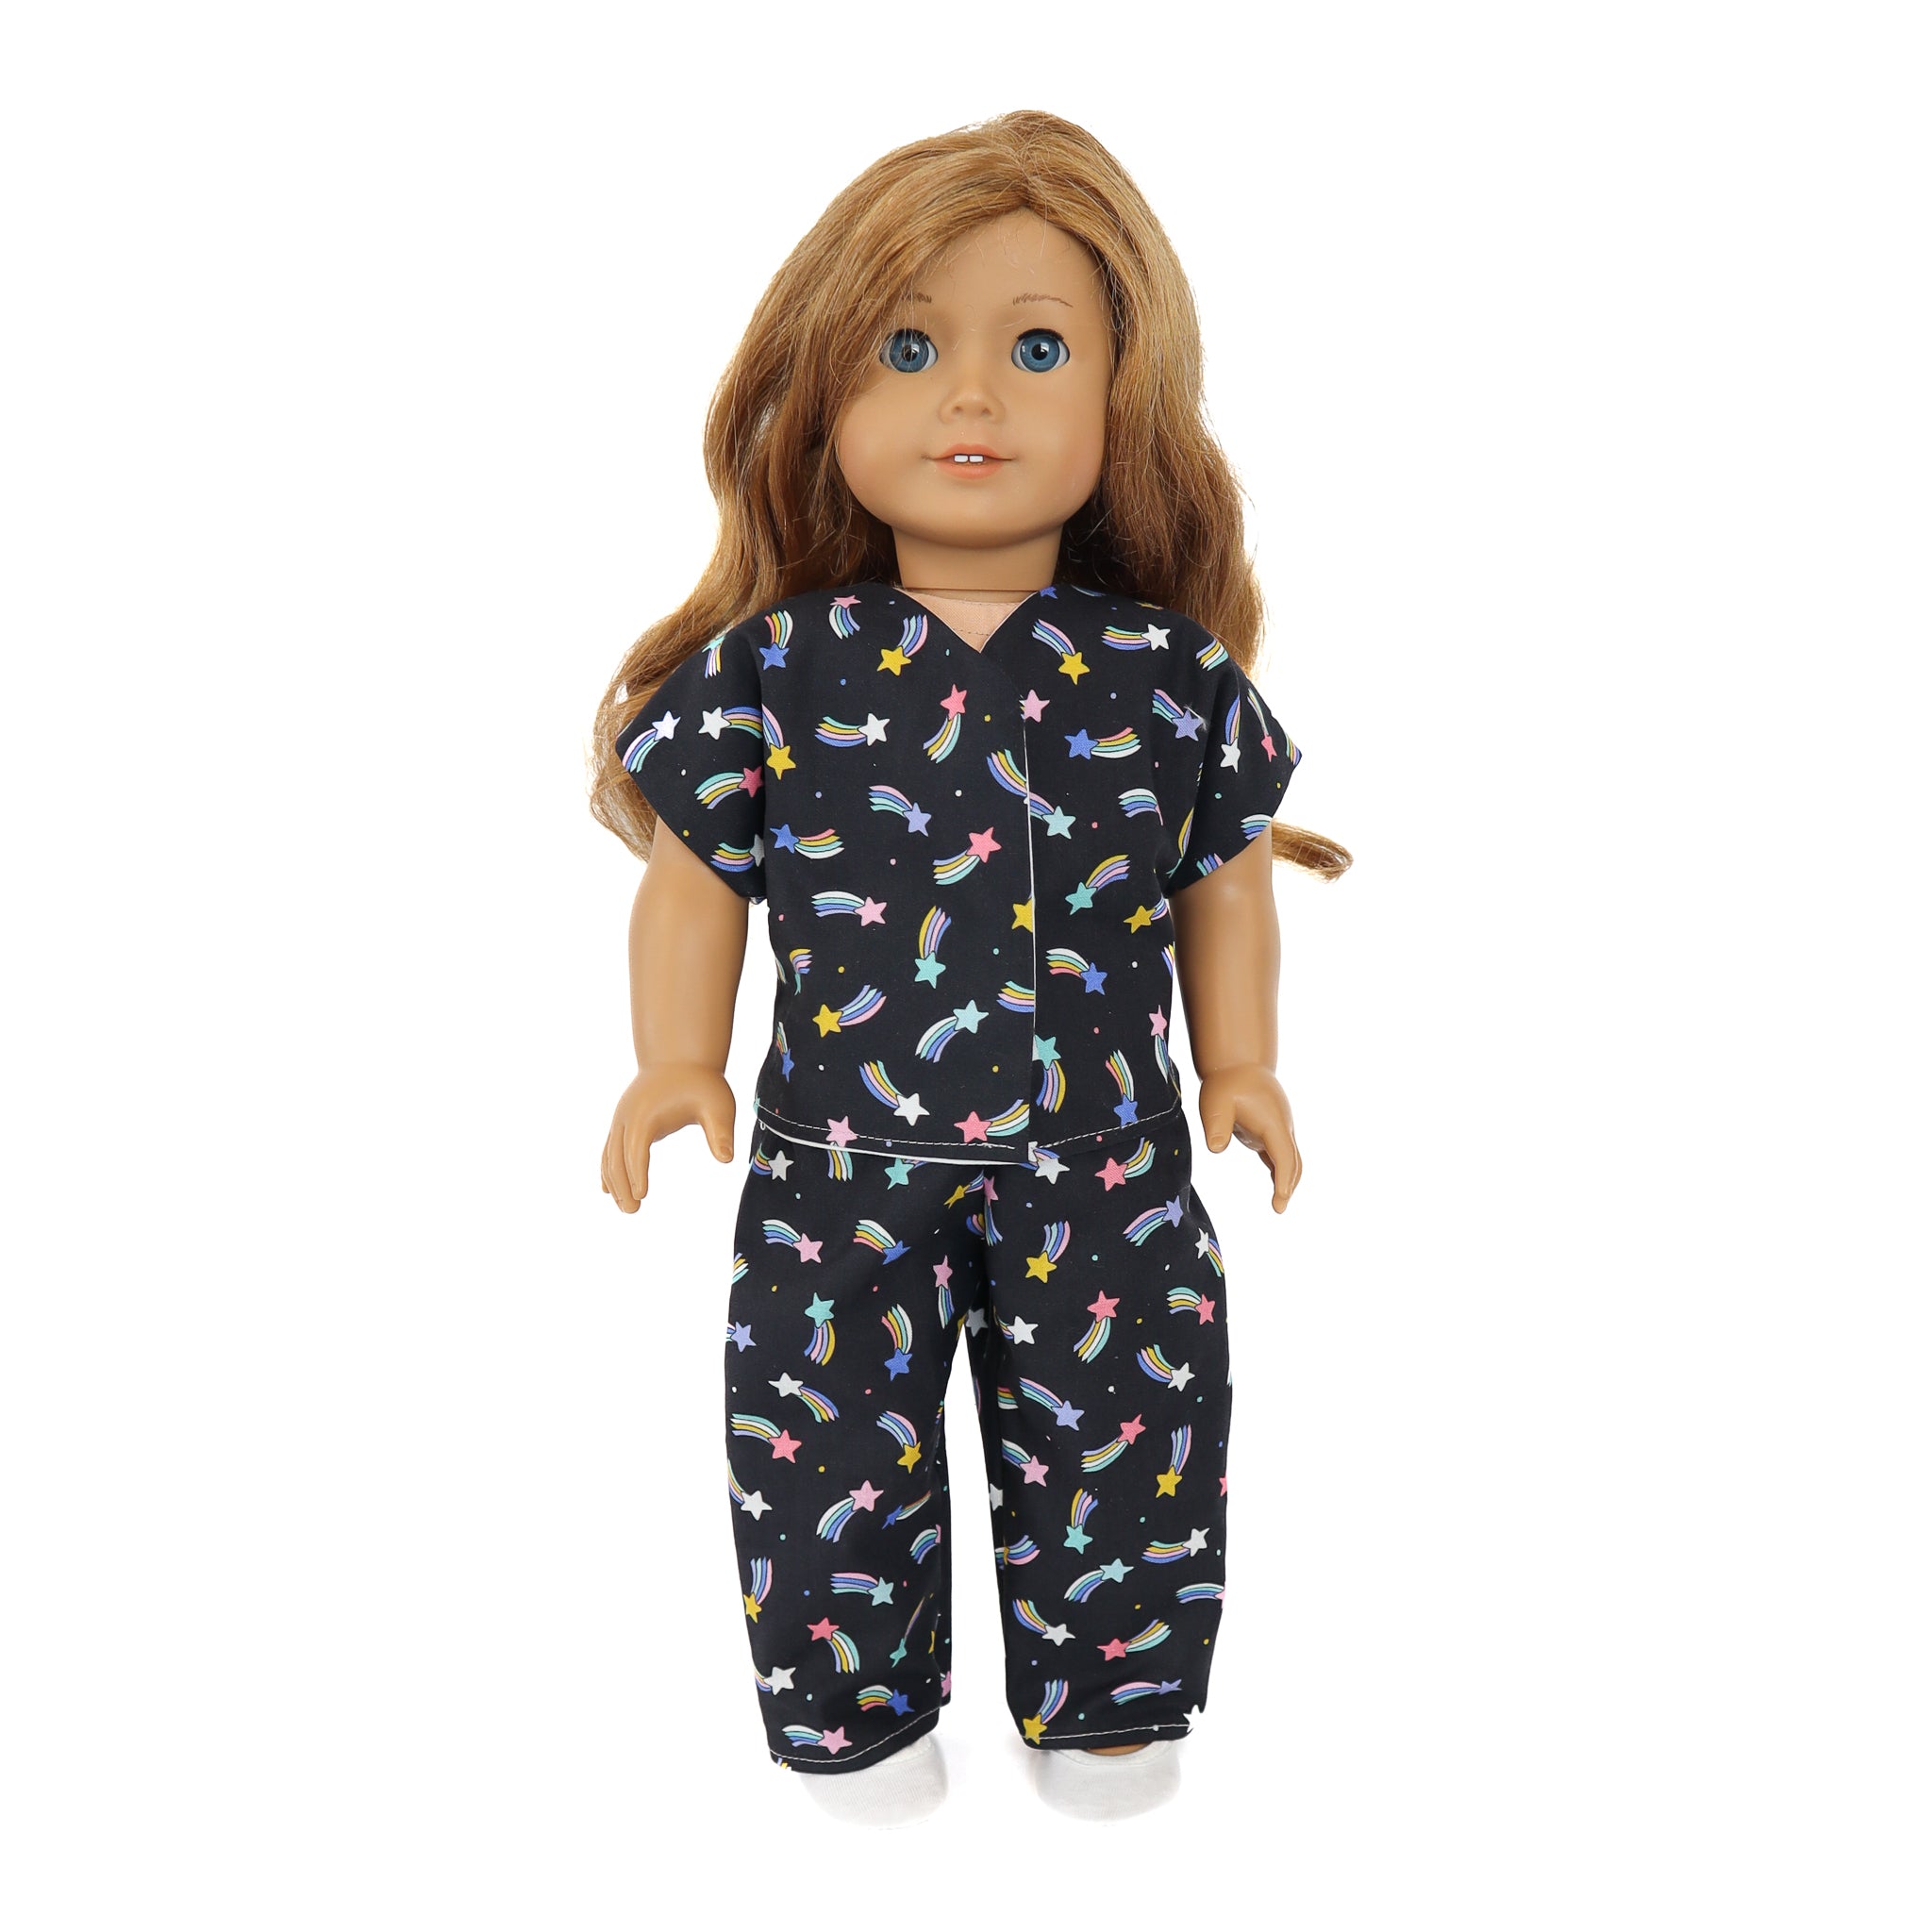 Kids Sewing Kit Bundle - Doll Pajamas, Drawstring Backpack & Pennant Banner